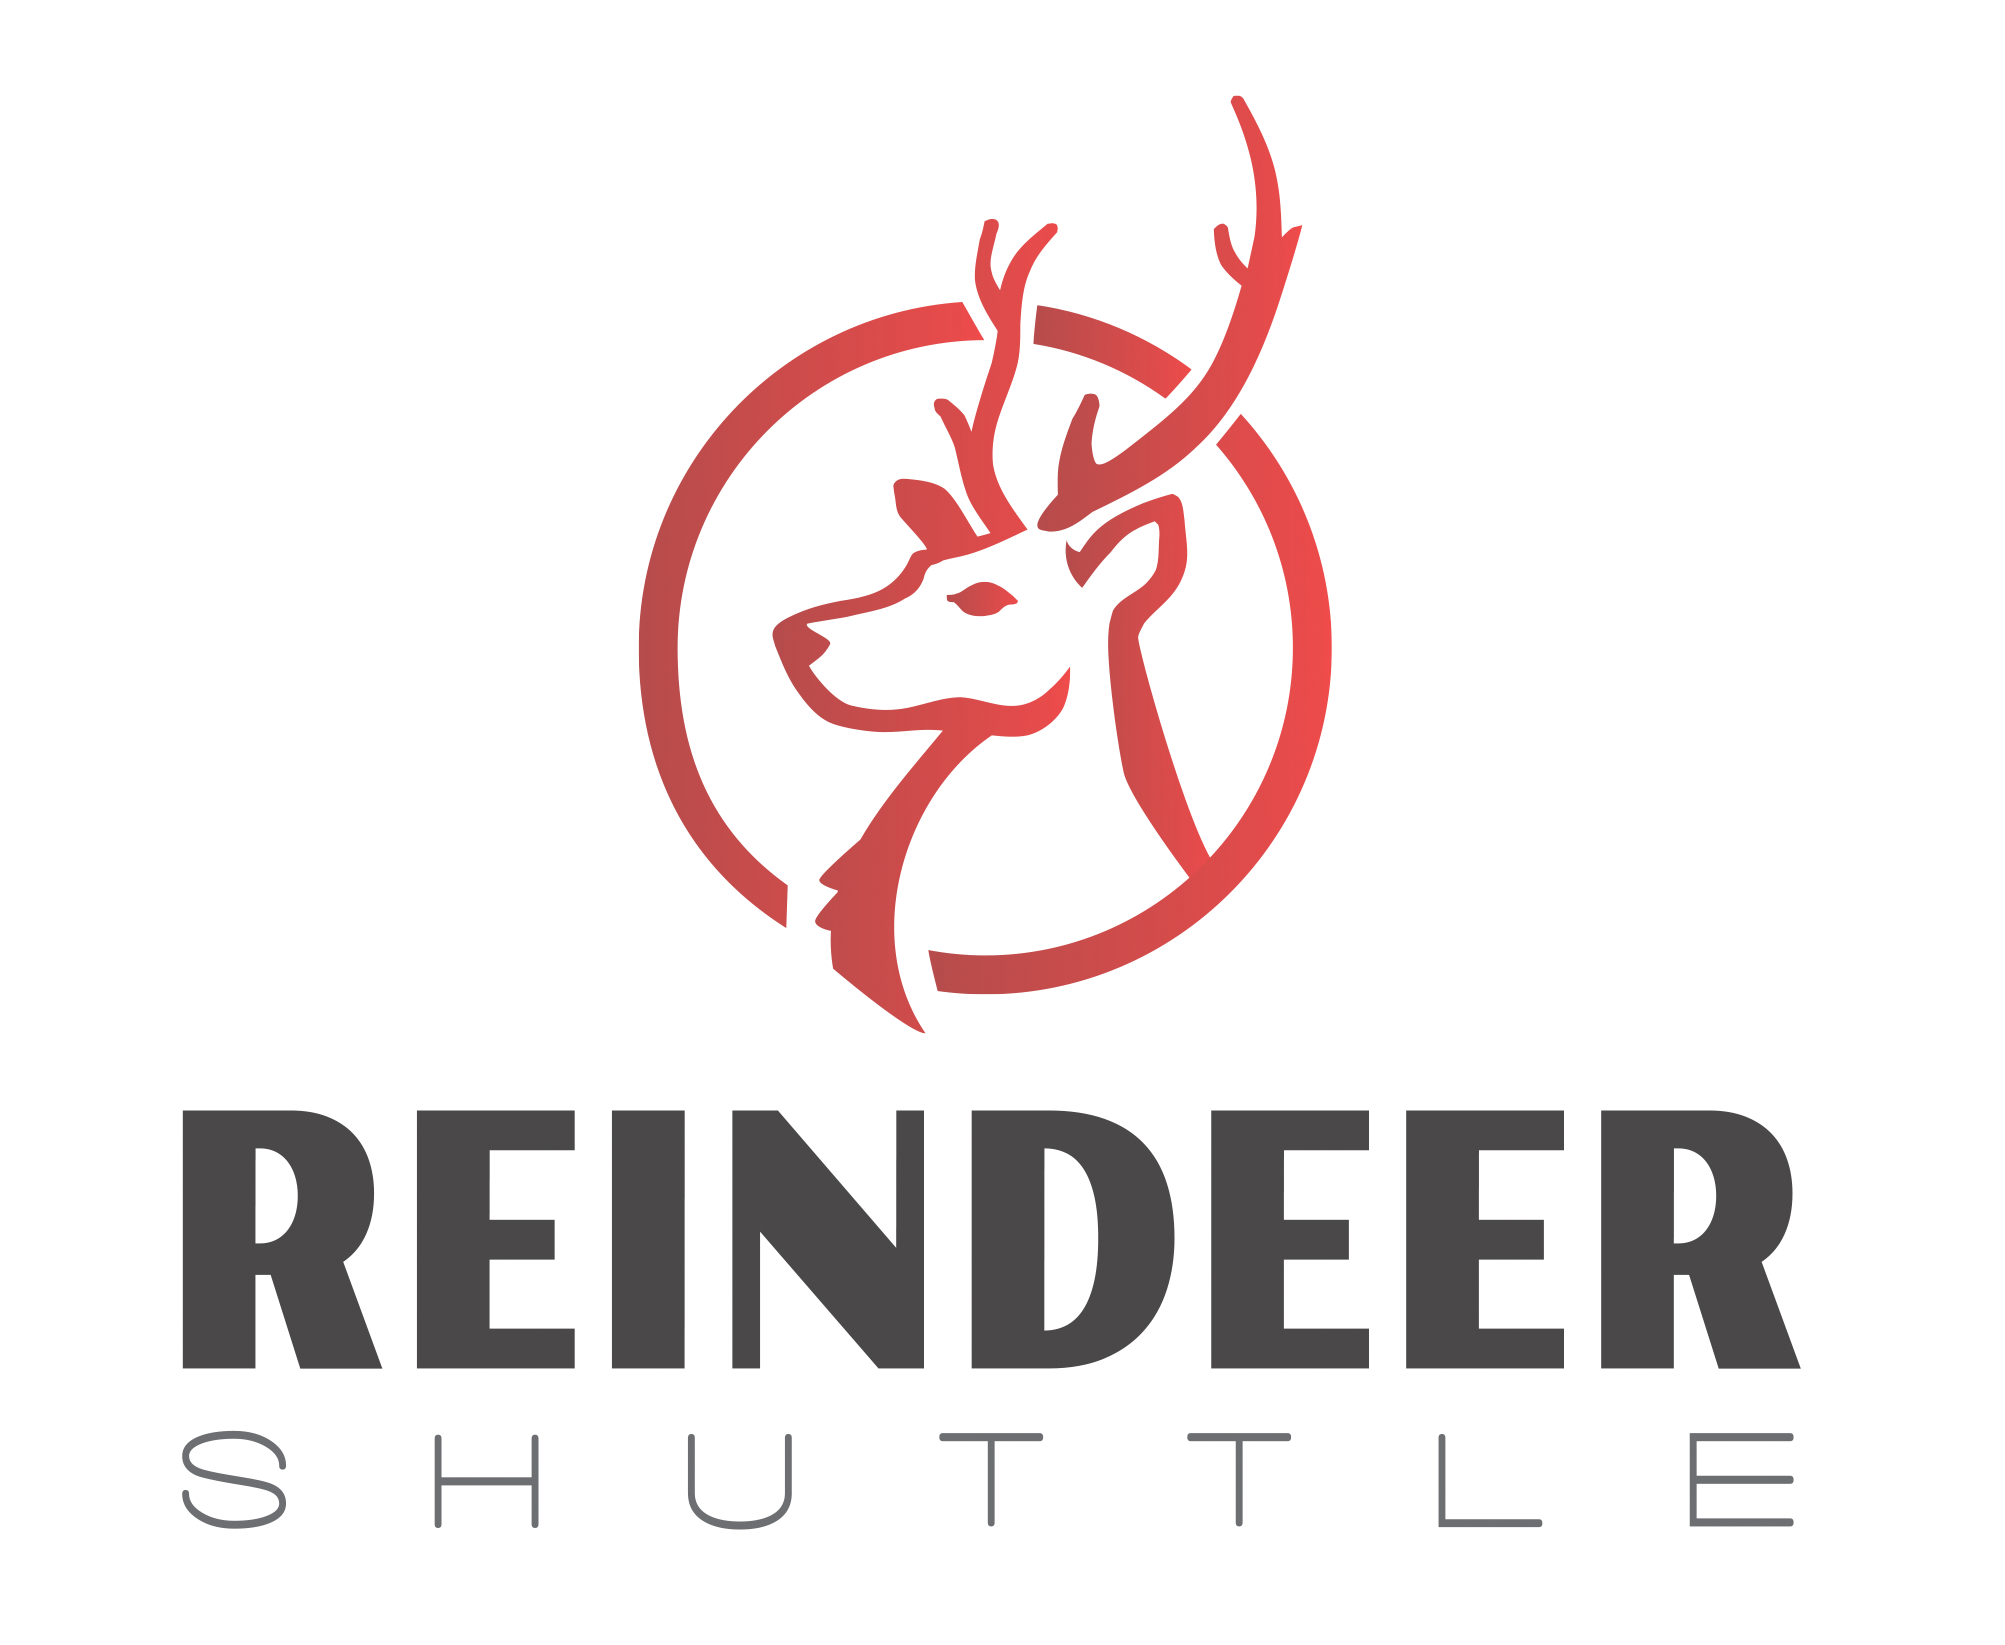 reindeershuttle.png